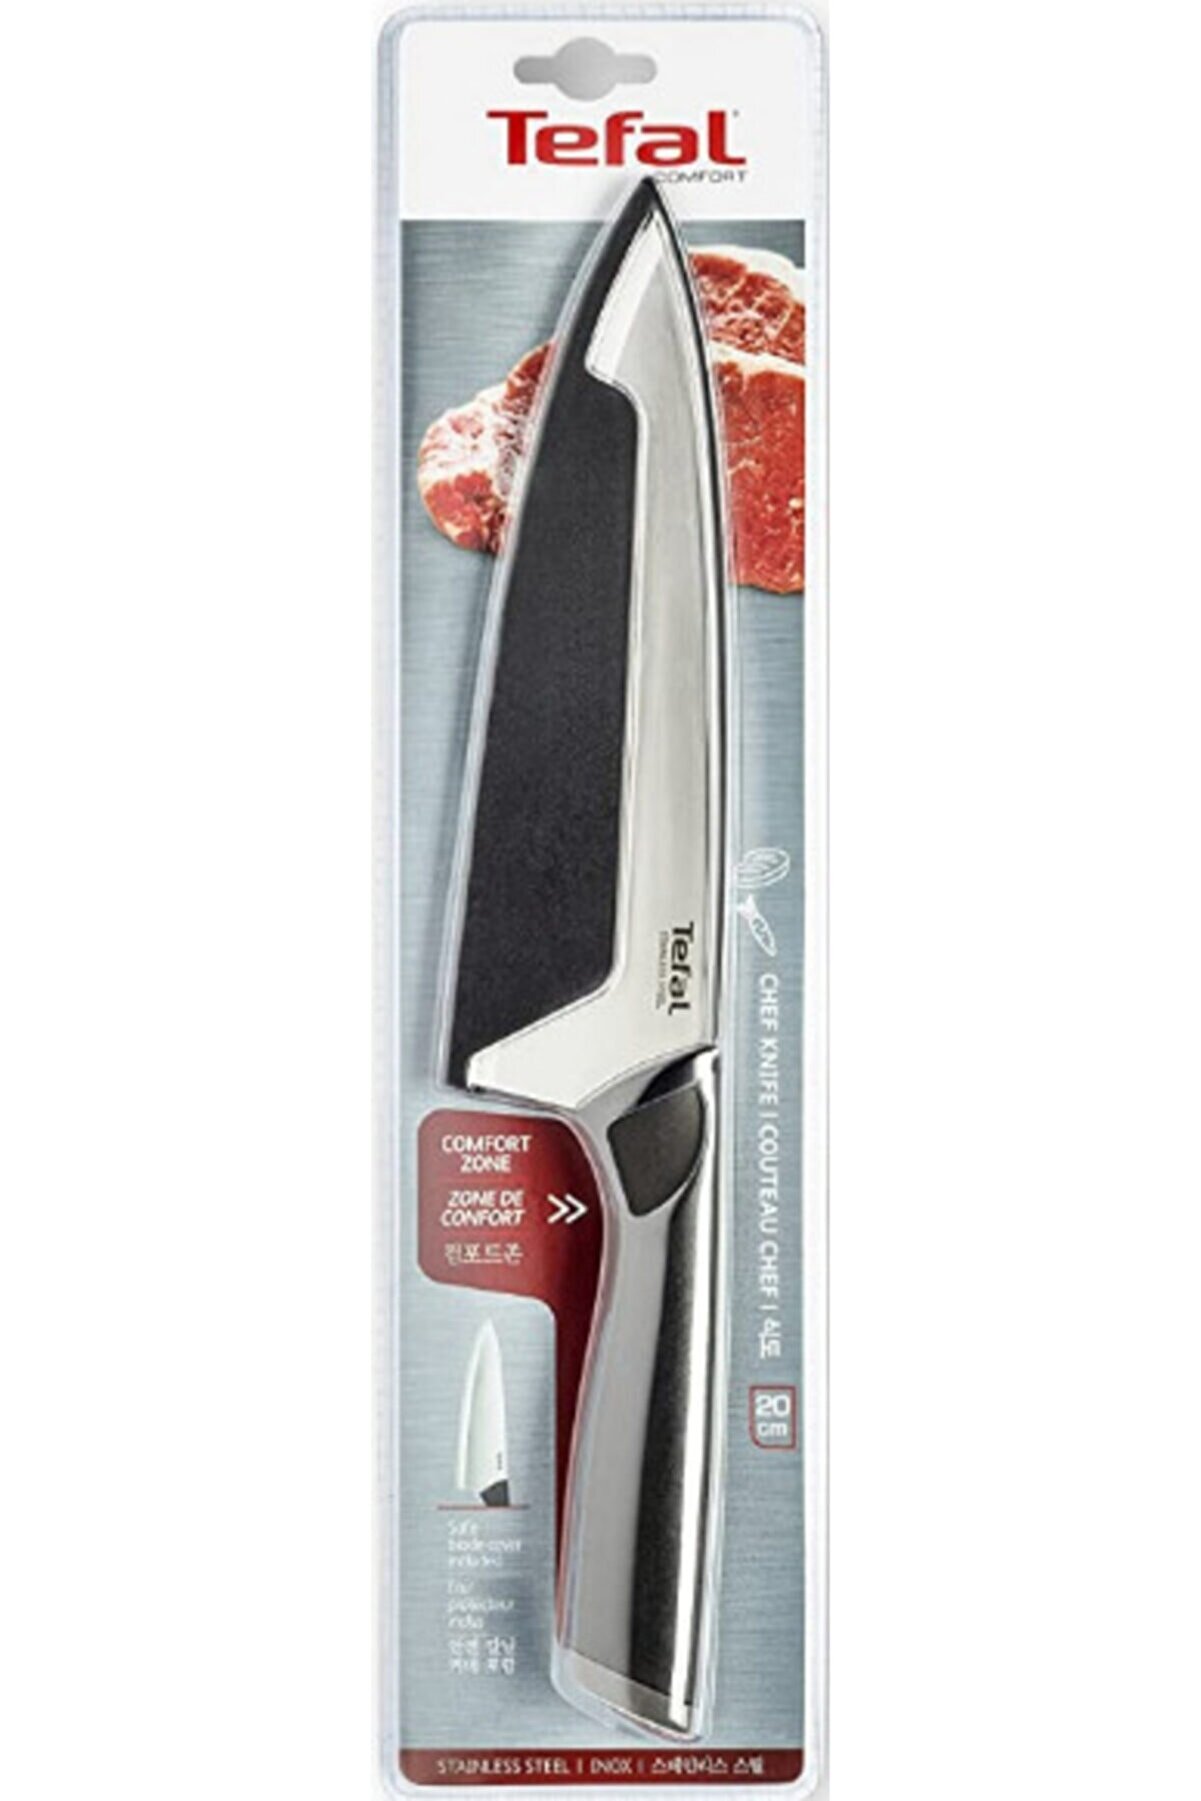 TEFAL Comfort 20 Cm Şef Bıçağı, Siyah, Paslanmaz Çelik